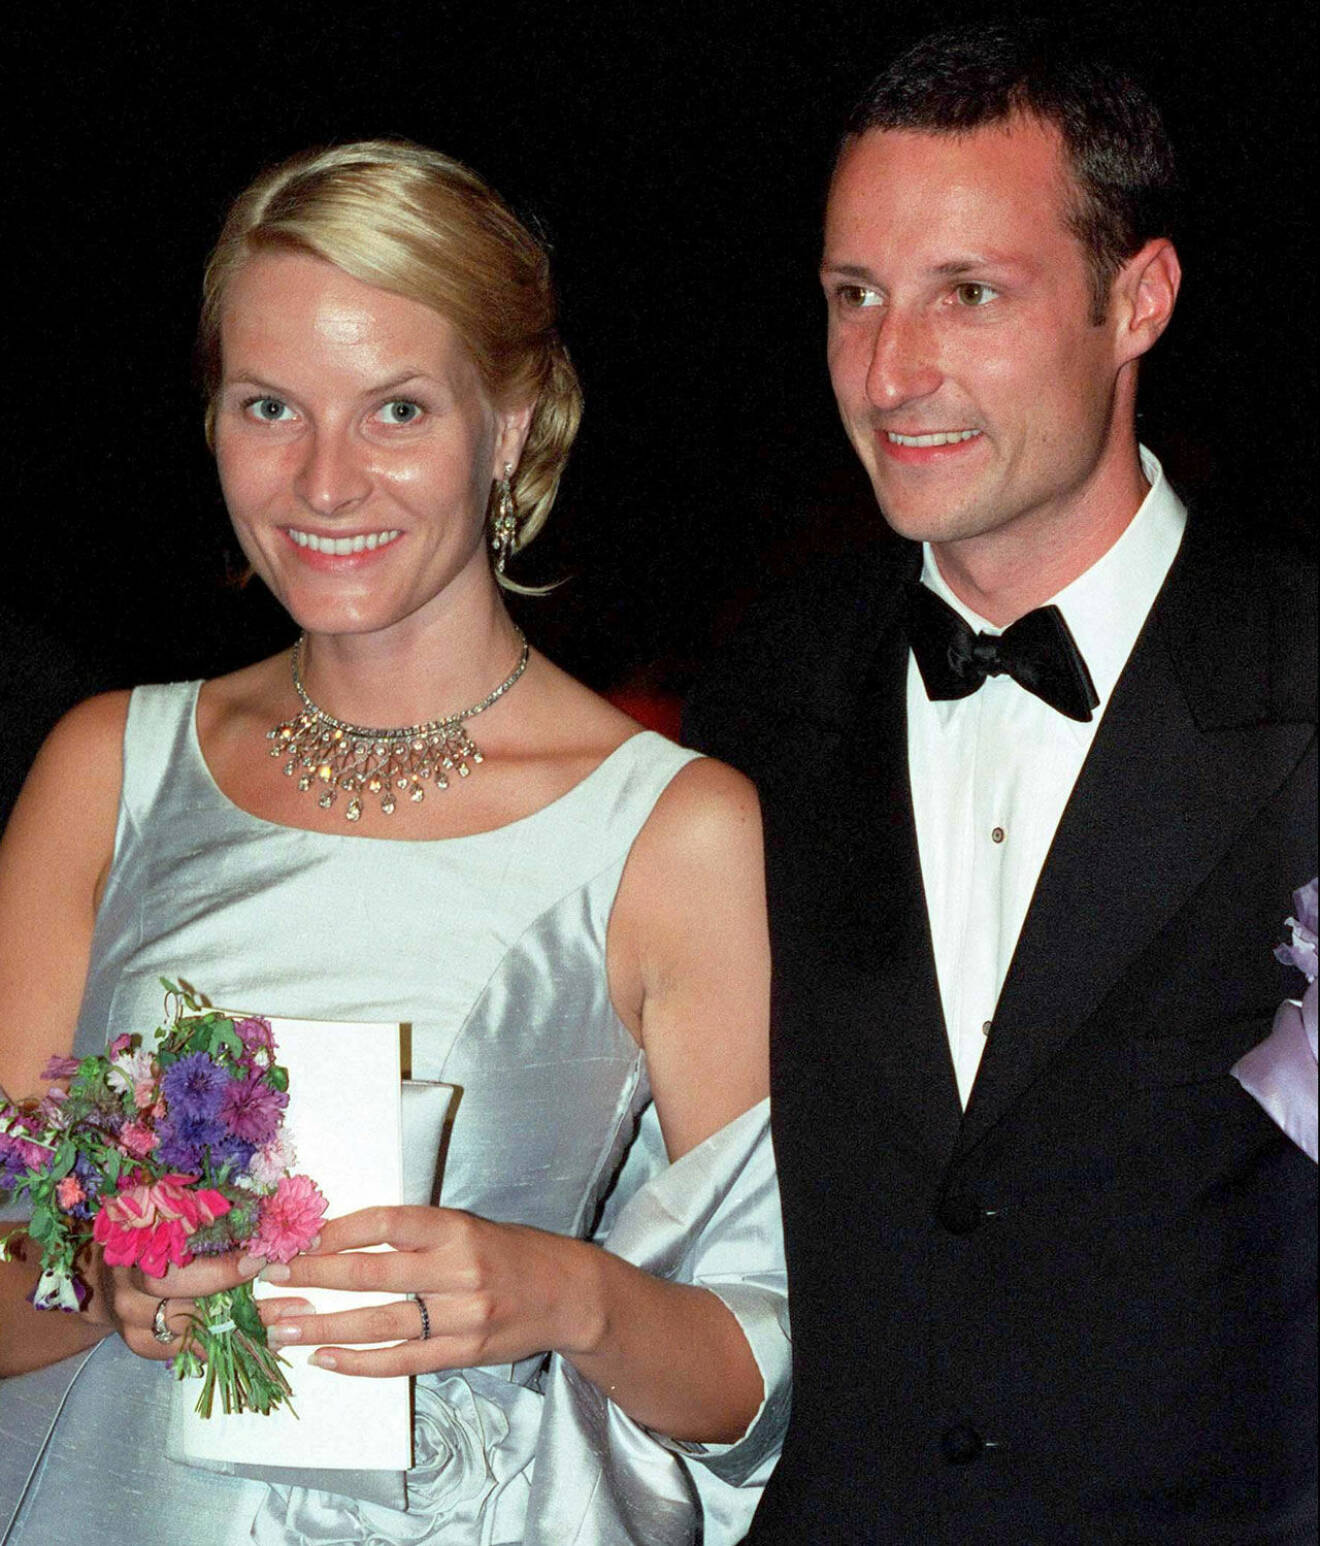 Mette-Marit och Haakon 2001.